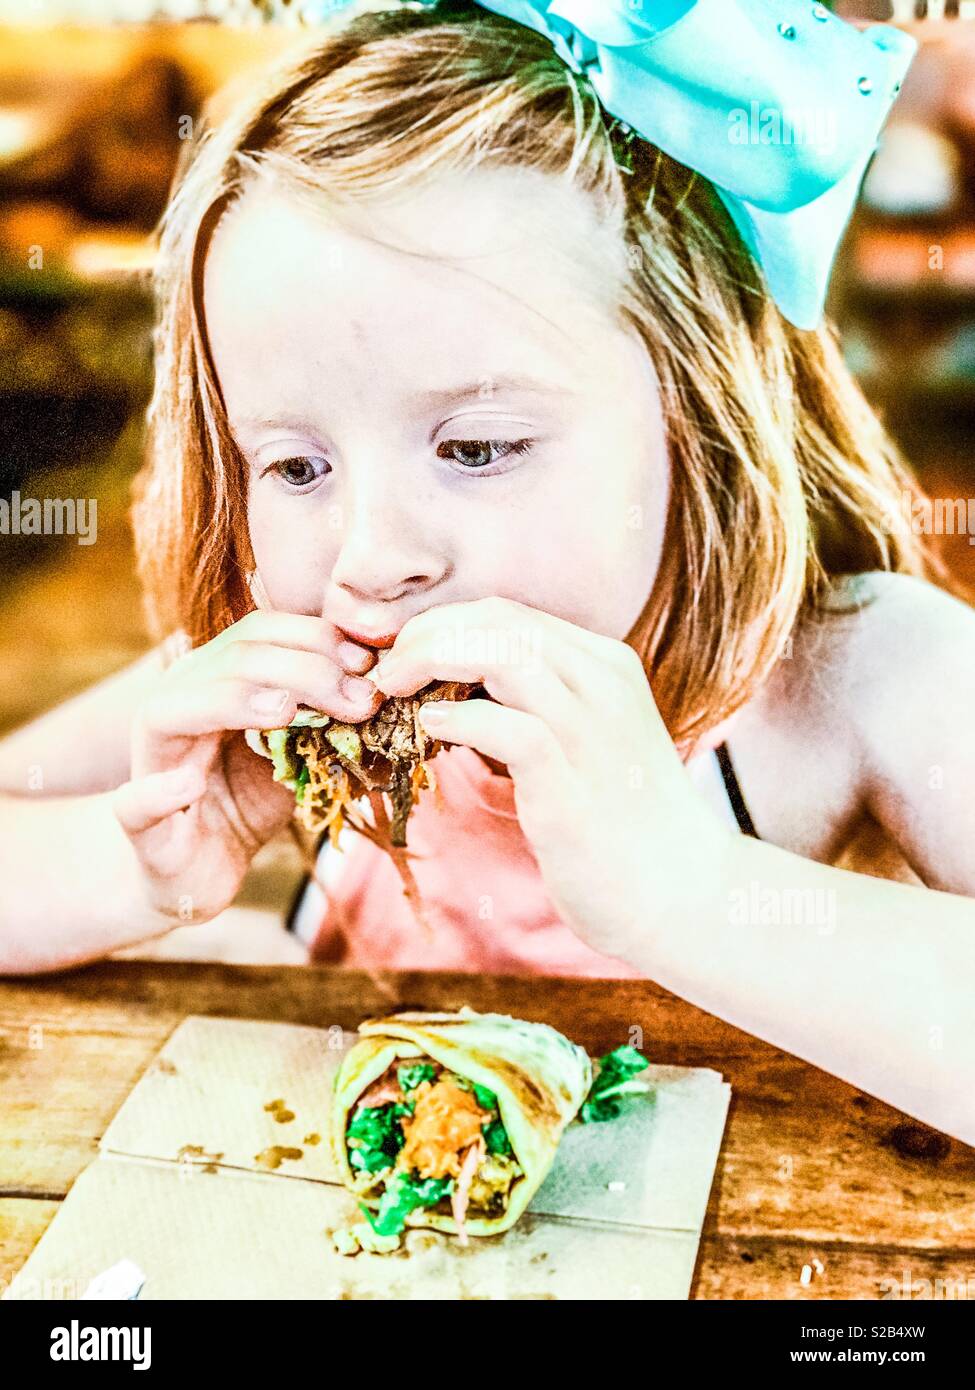 Junge 7 Jahre altes Mädchen mit einem gezogenen Schweinefleisch wrap in einem Restaurant Stockfoto